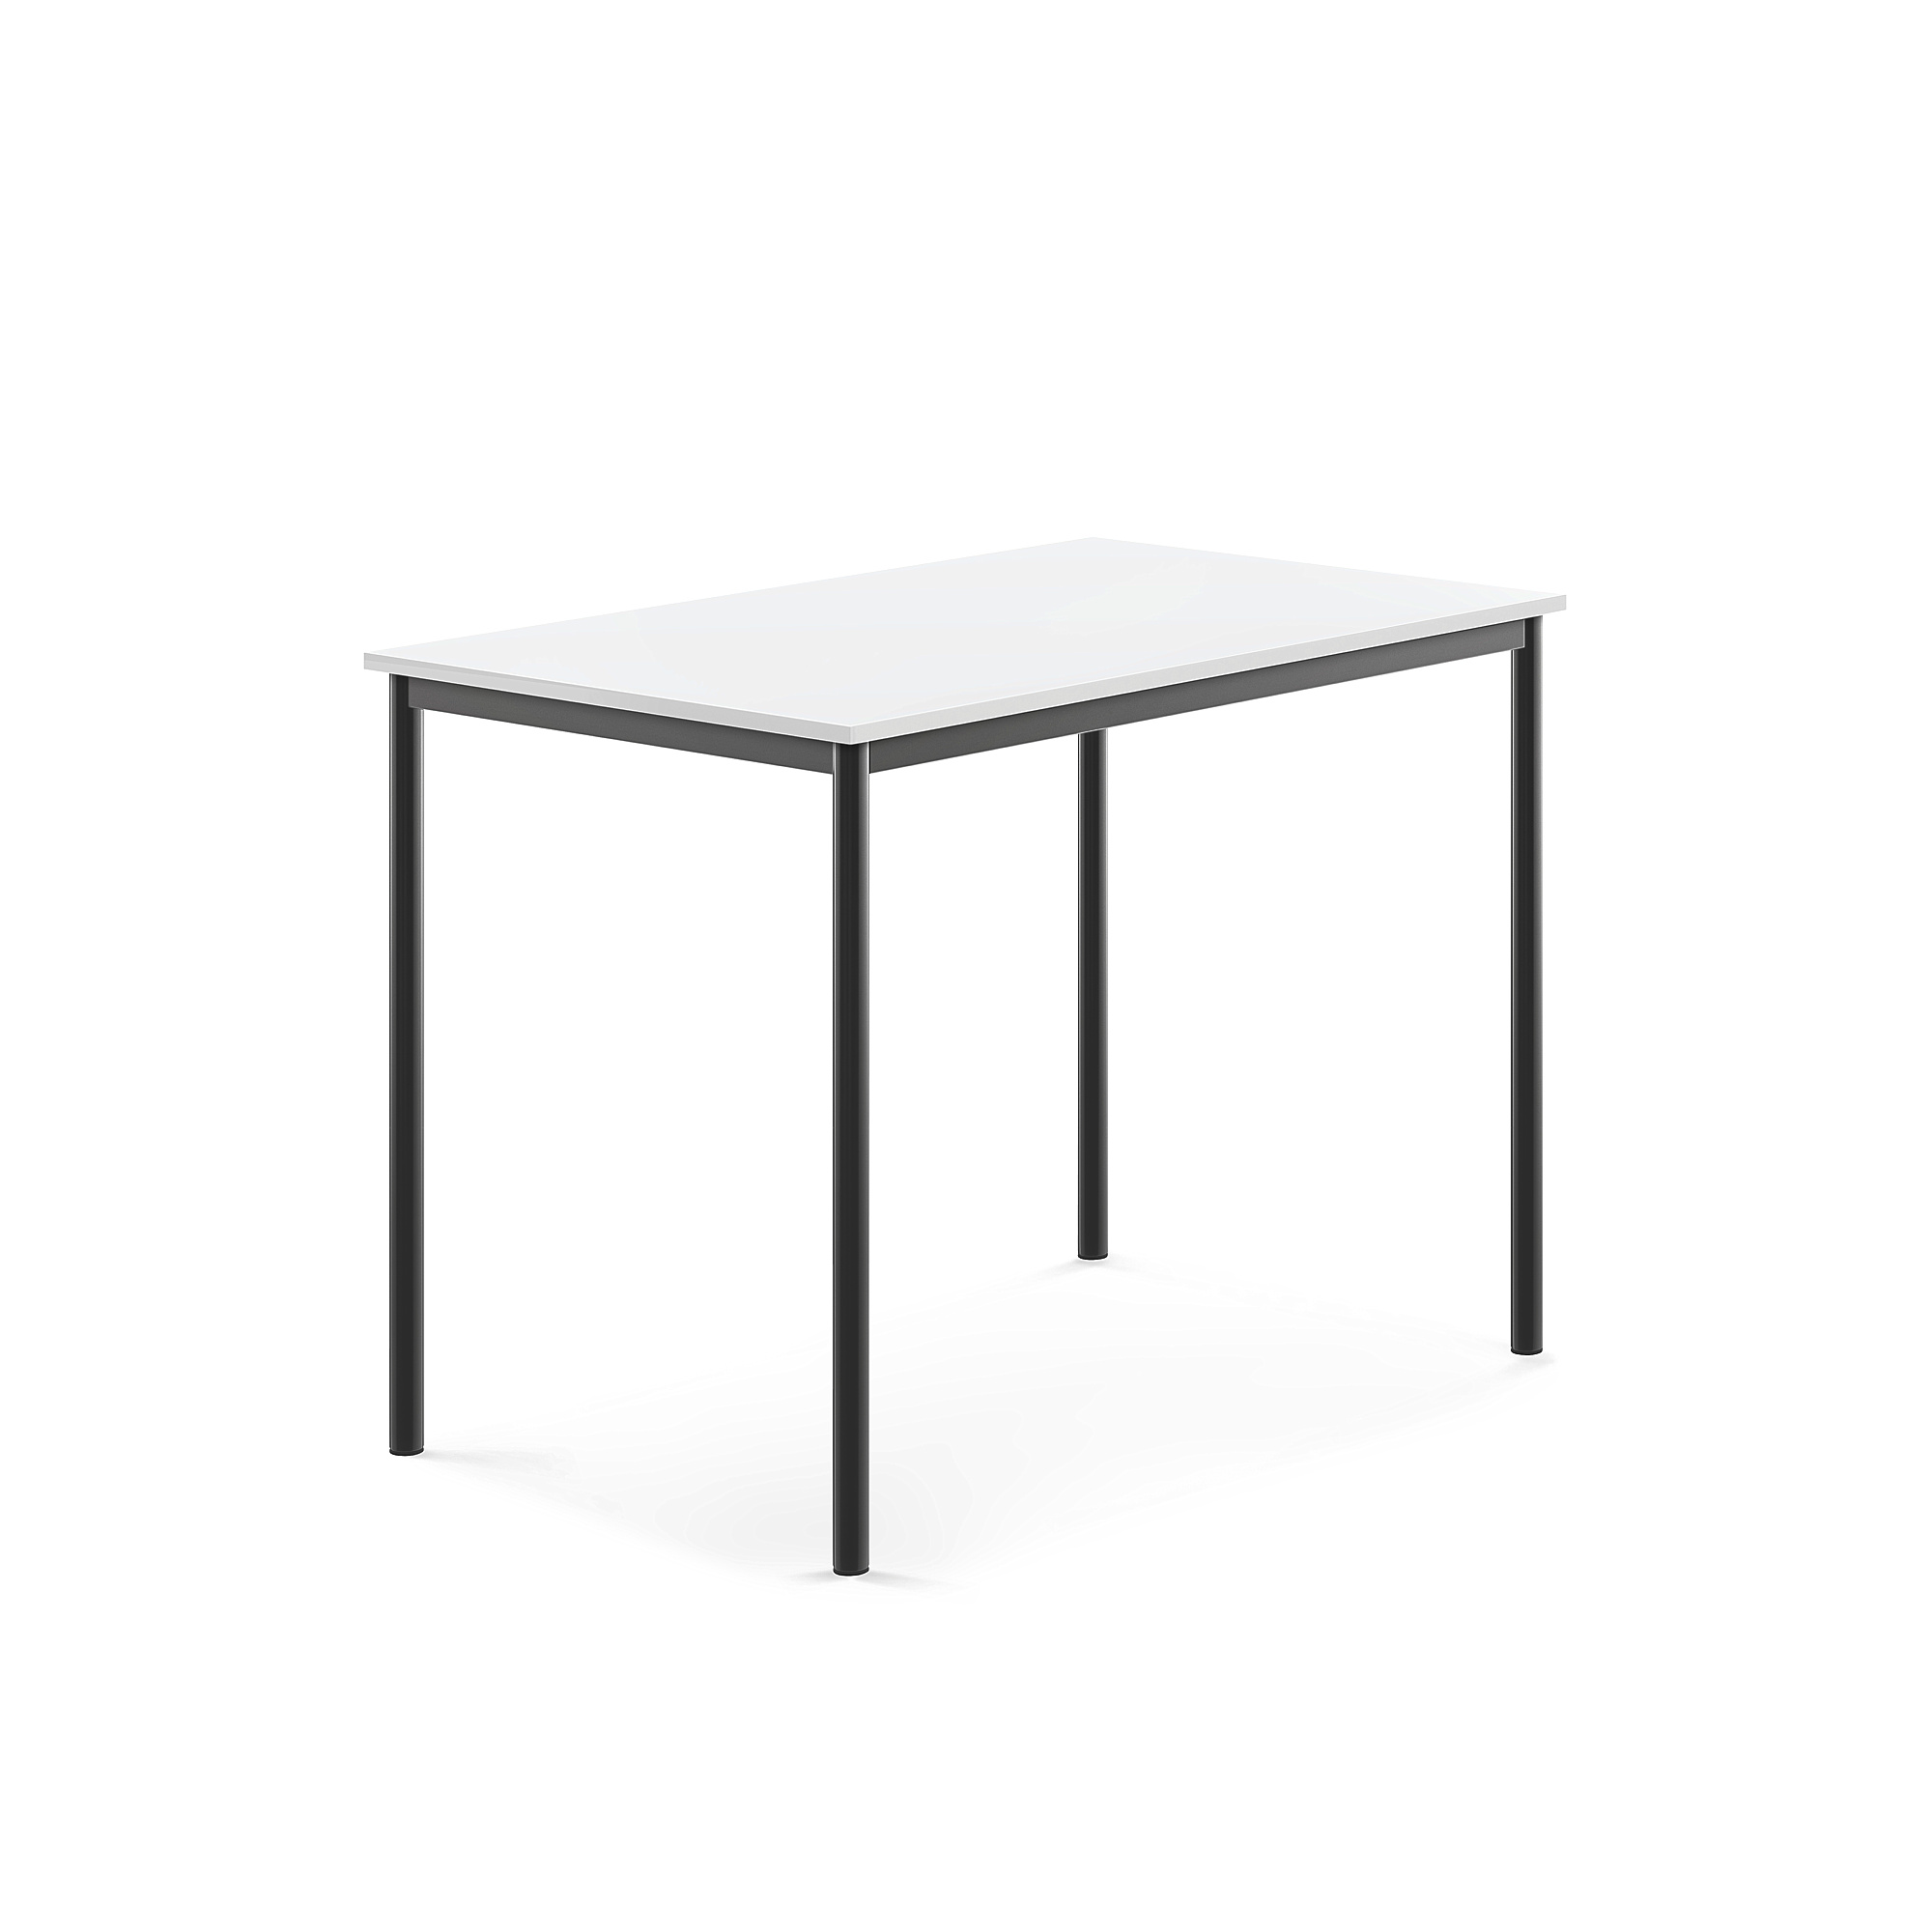 Stůl SONITUS, 1200x800x900 mm, antracitově šedé nohy, HPL deska tlumící hluk, bílá